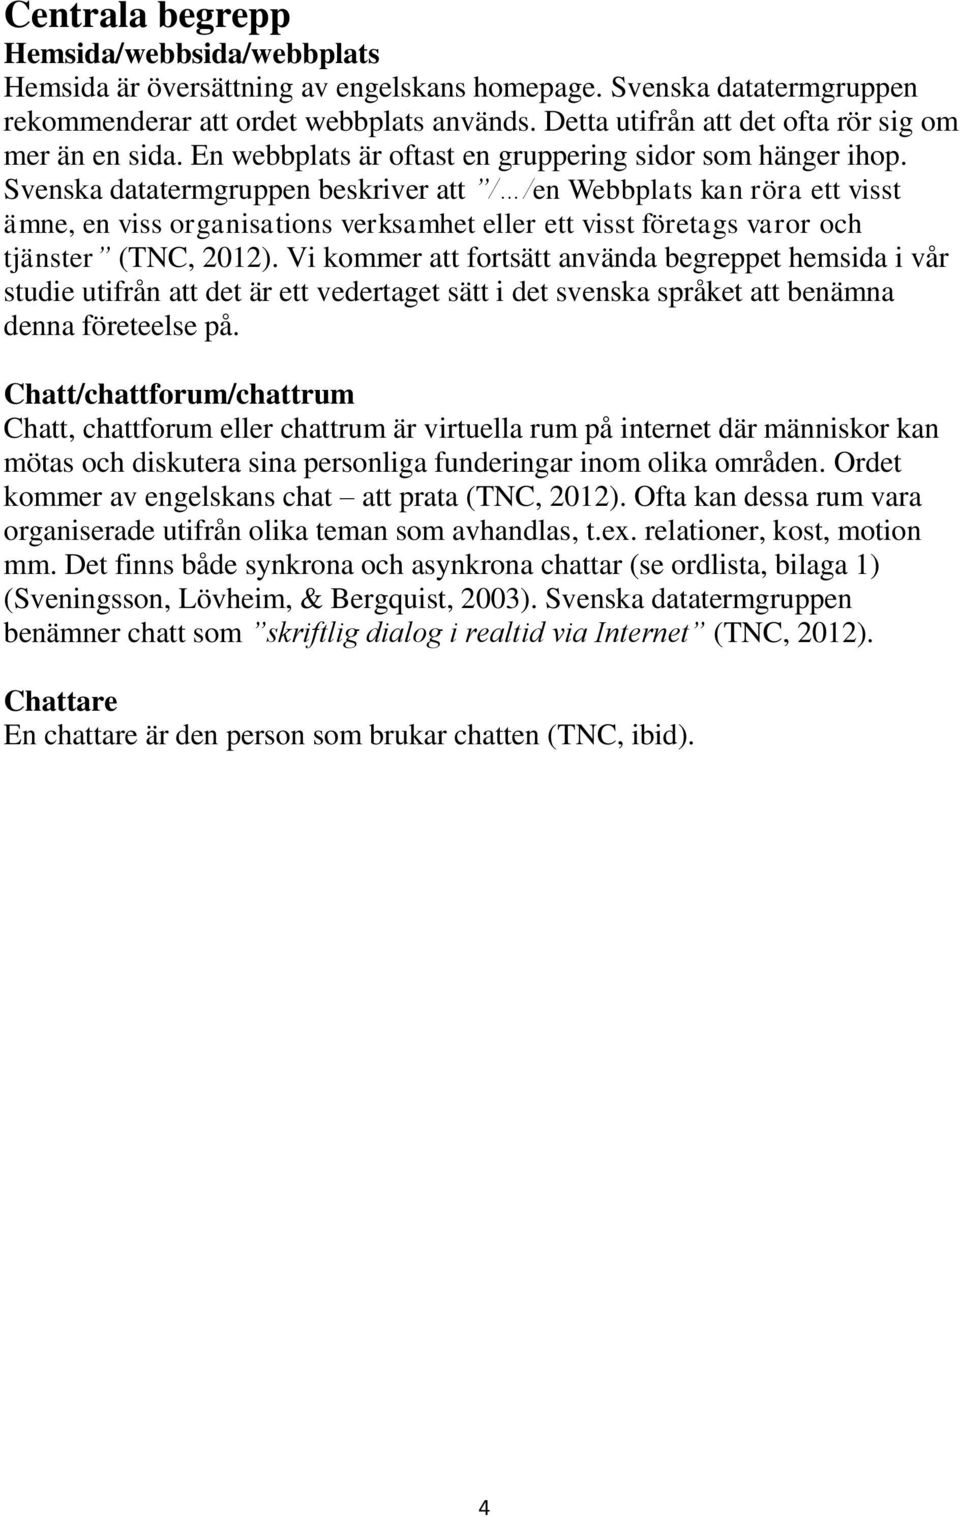 Svenska datatermgruppen beskriver att / /en Webbplats kan röra ett visst ämne, en viss organisations verksamhet eller ett visst företags varor och tjänster (TNC, 2012).